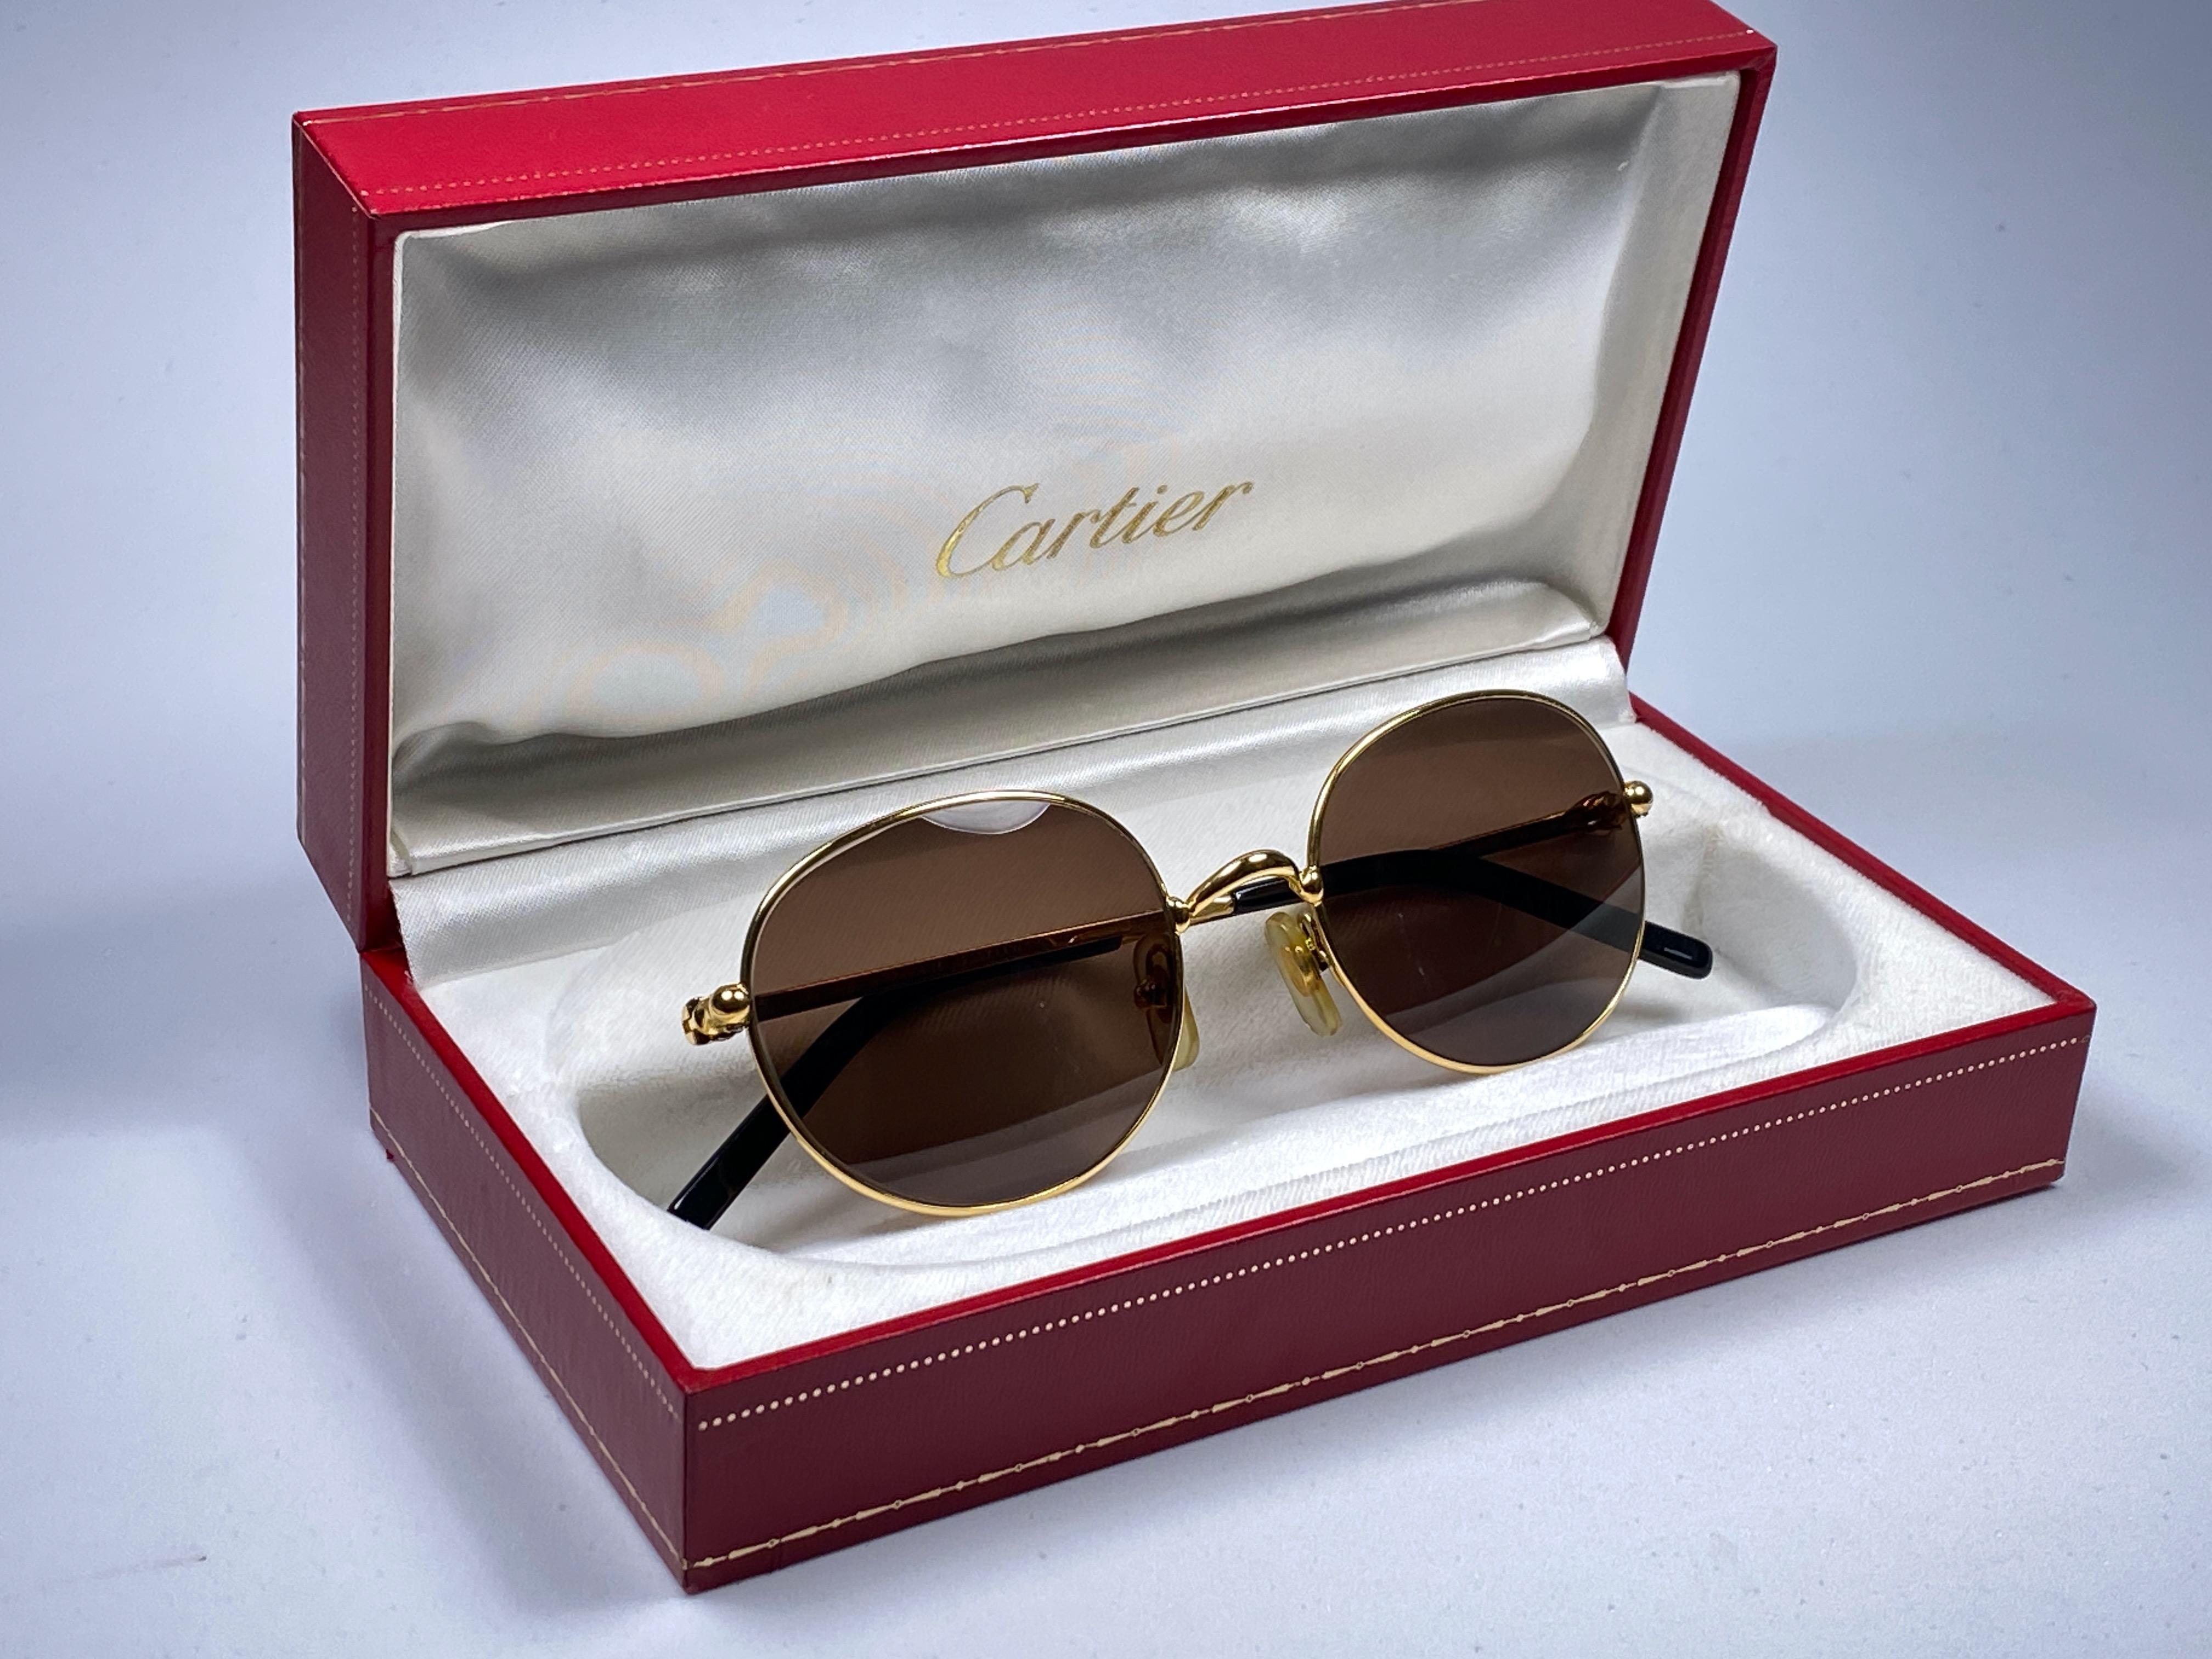 Neuwertige ovale Cartier Antares Sonnenbrille mit braunen Gläsern (UV-Schutz).  Alle Markenzeichen. Silberne Cartier-Zeichen auf den Ohrmuscheln. 
Beide Arme tragen den Knoten von Cartier an der Schläfe. Sie sind wie ein Paar Juwelen auf der Nase.